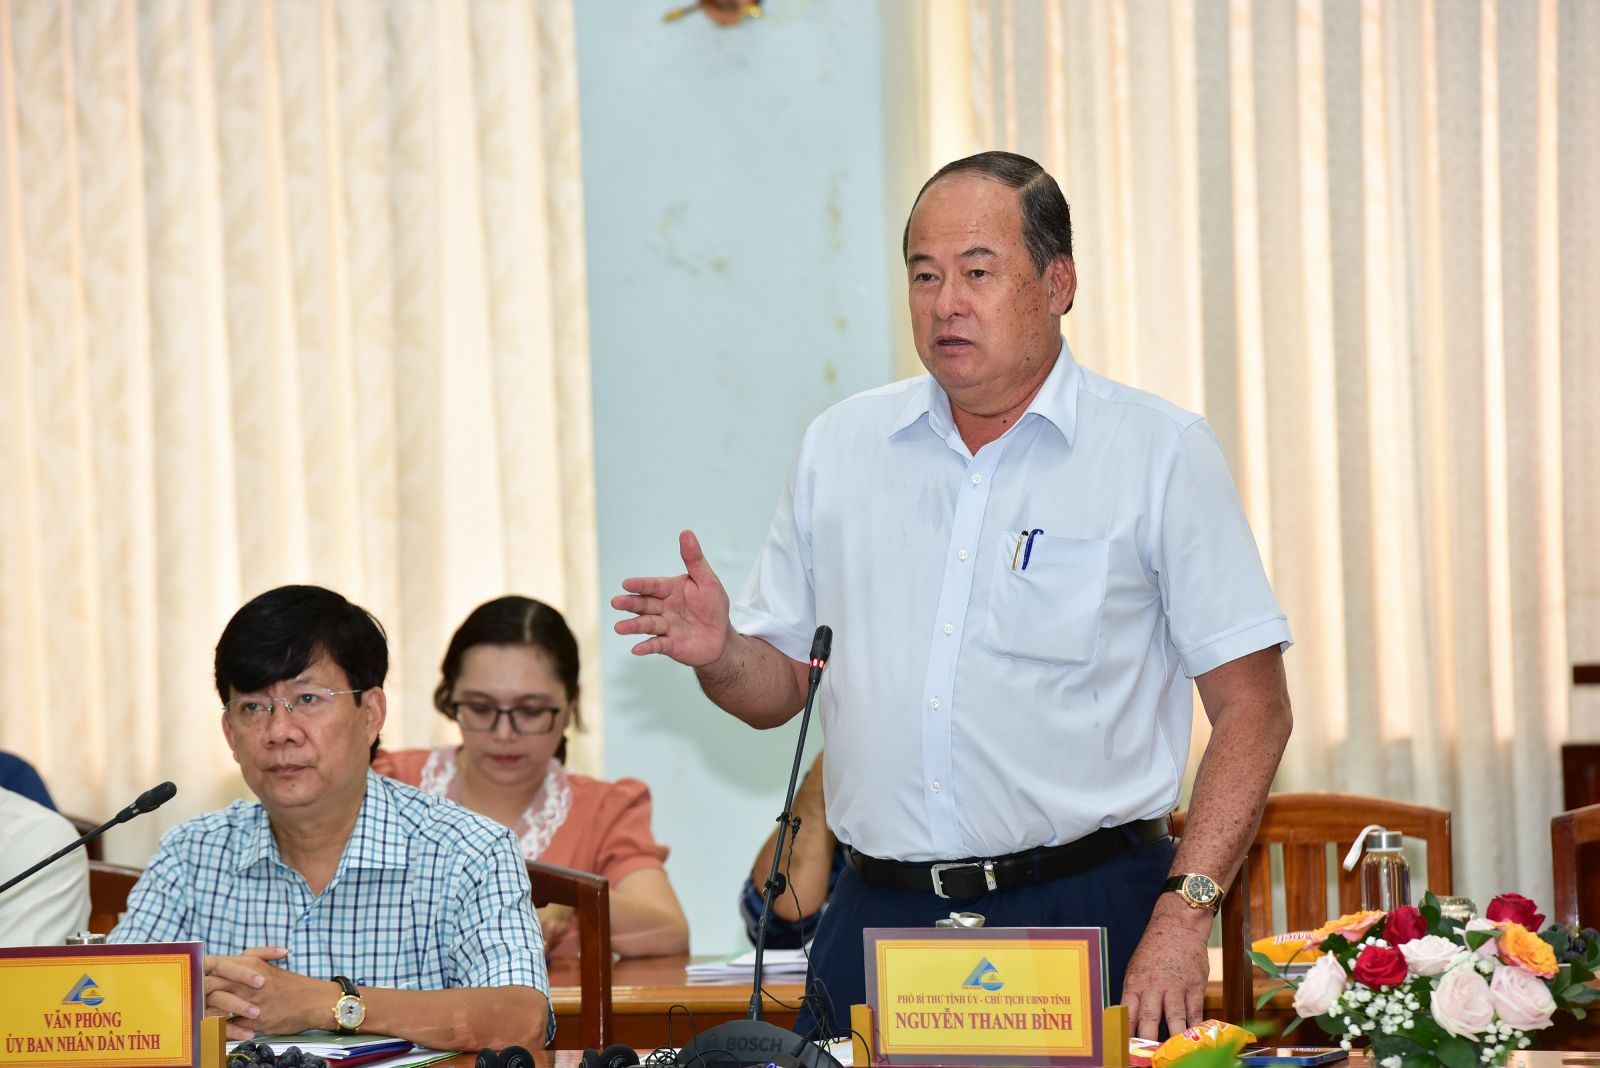 Phát biểu tại cuộc họp, Ông Nguyễn Thanh Bình - Phó Bí thư Tỉnh ủy, Chủ tịch UBND tỉnh An Giang đánh giá cao đề án của NovaGroup.